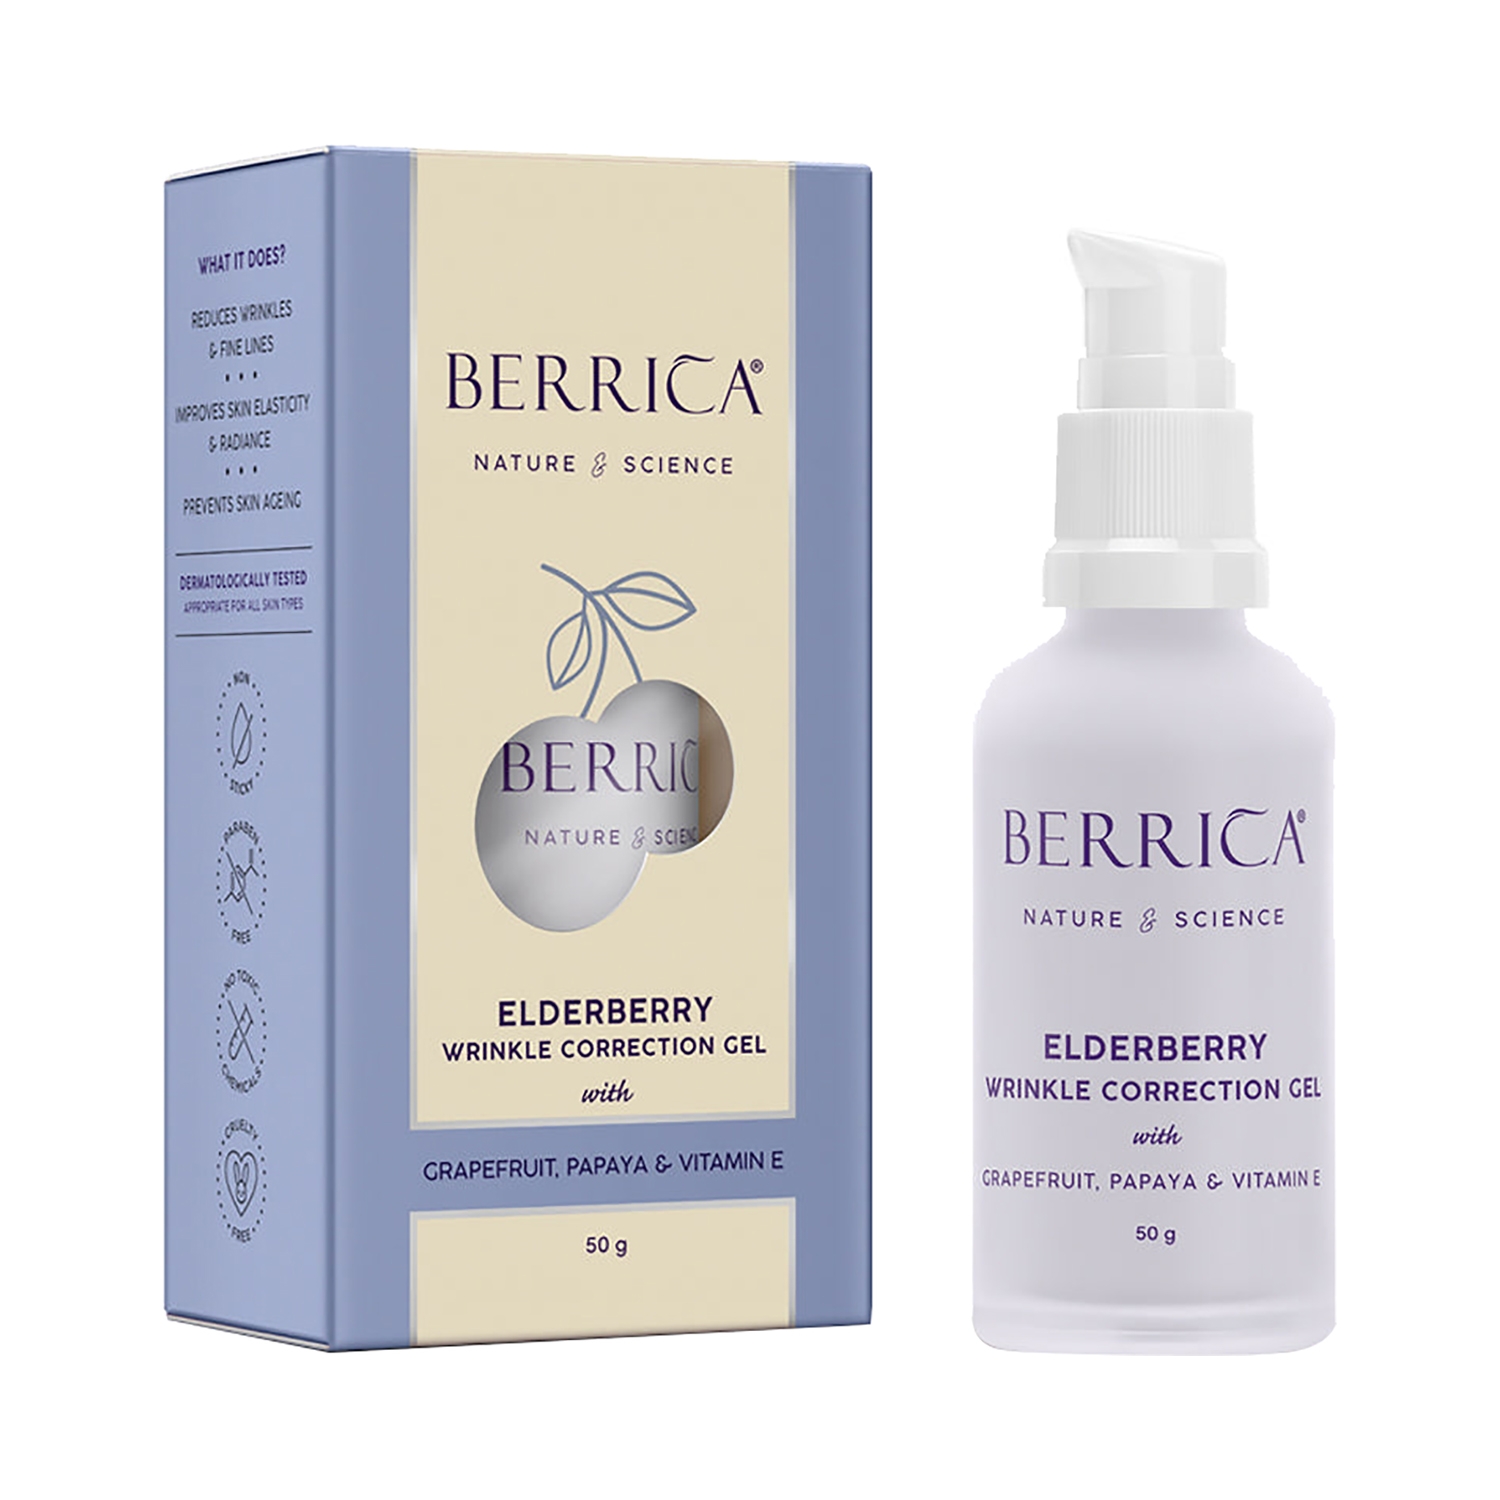 Berrica Elderberry Wrinkle Correction Gel (50g)